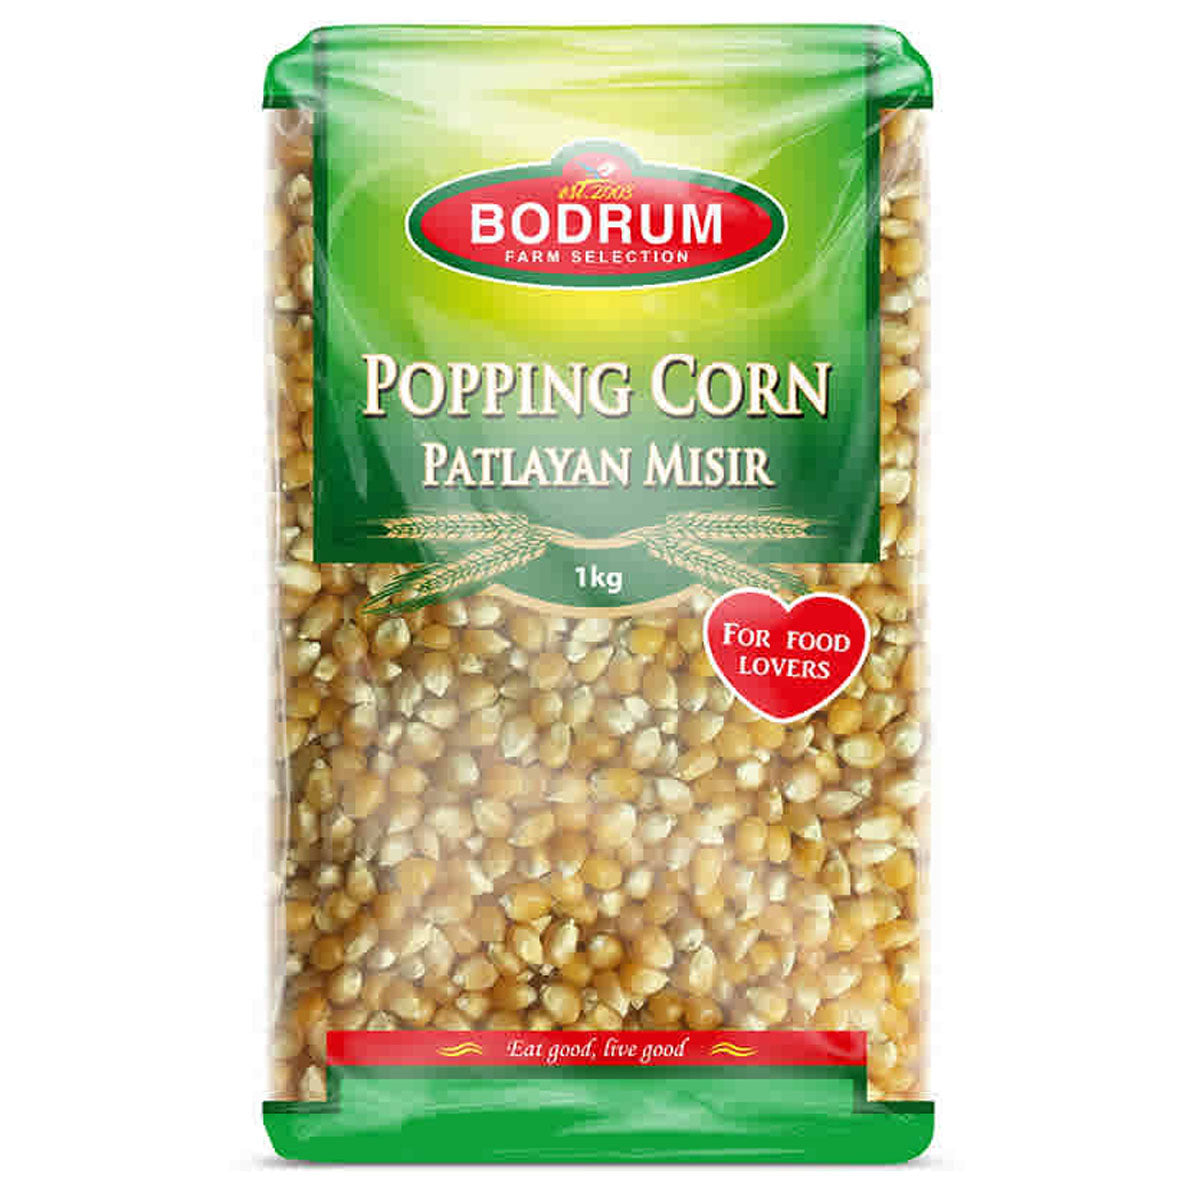 Bodrum - Bodrum popping corn - 1kg.